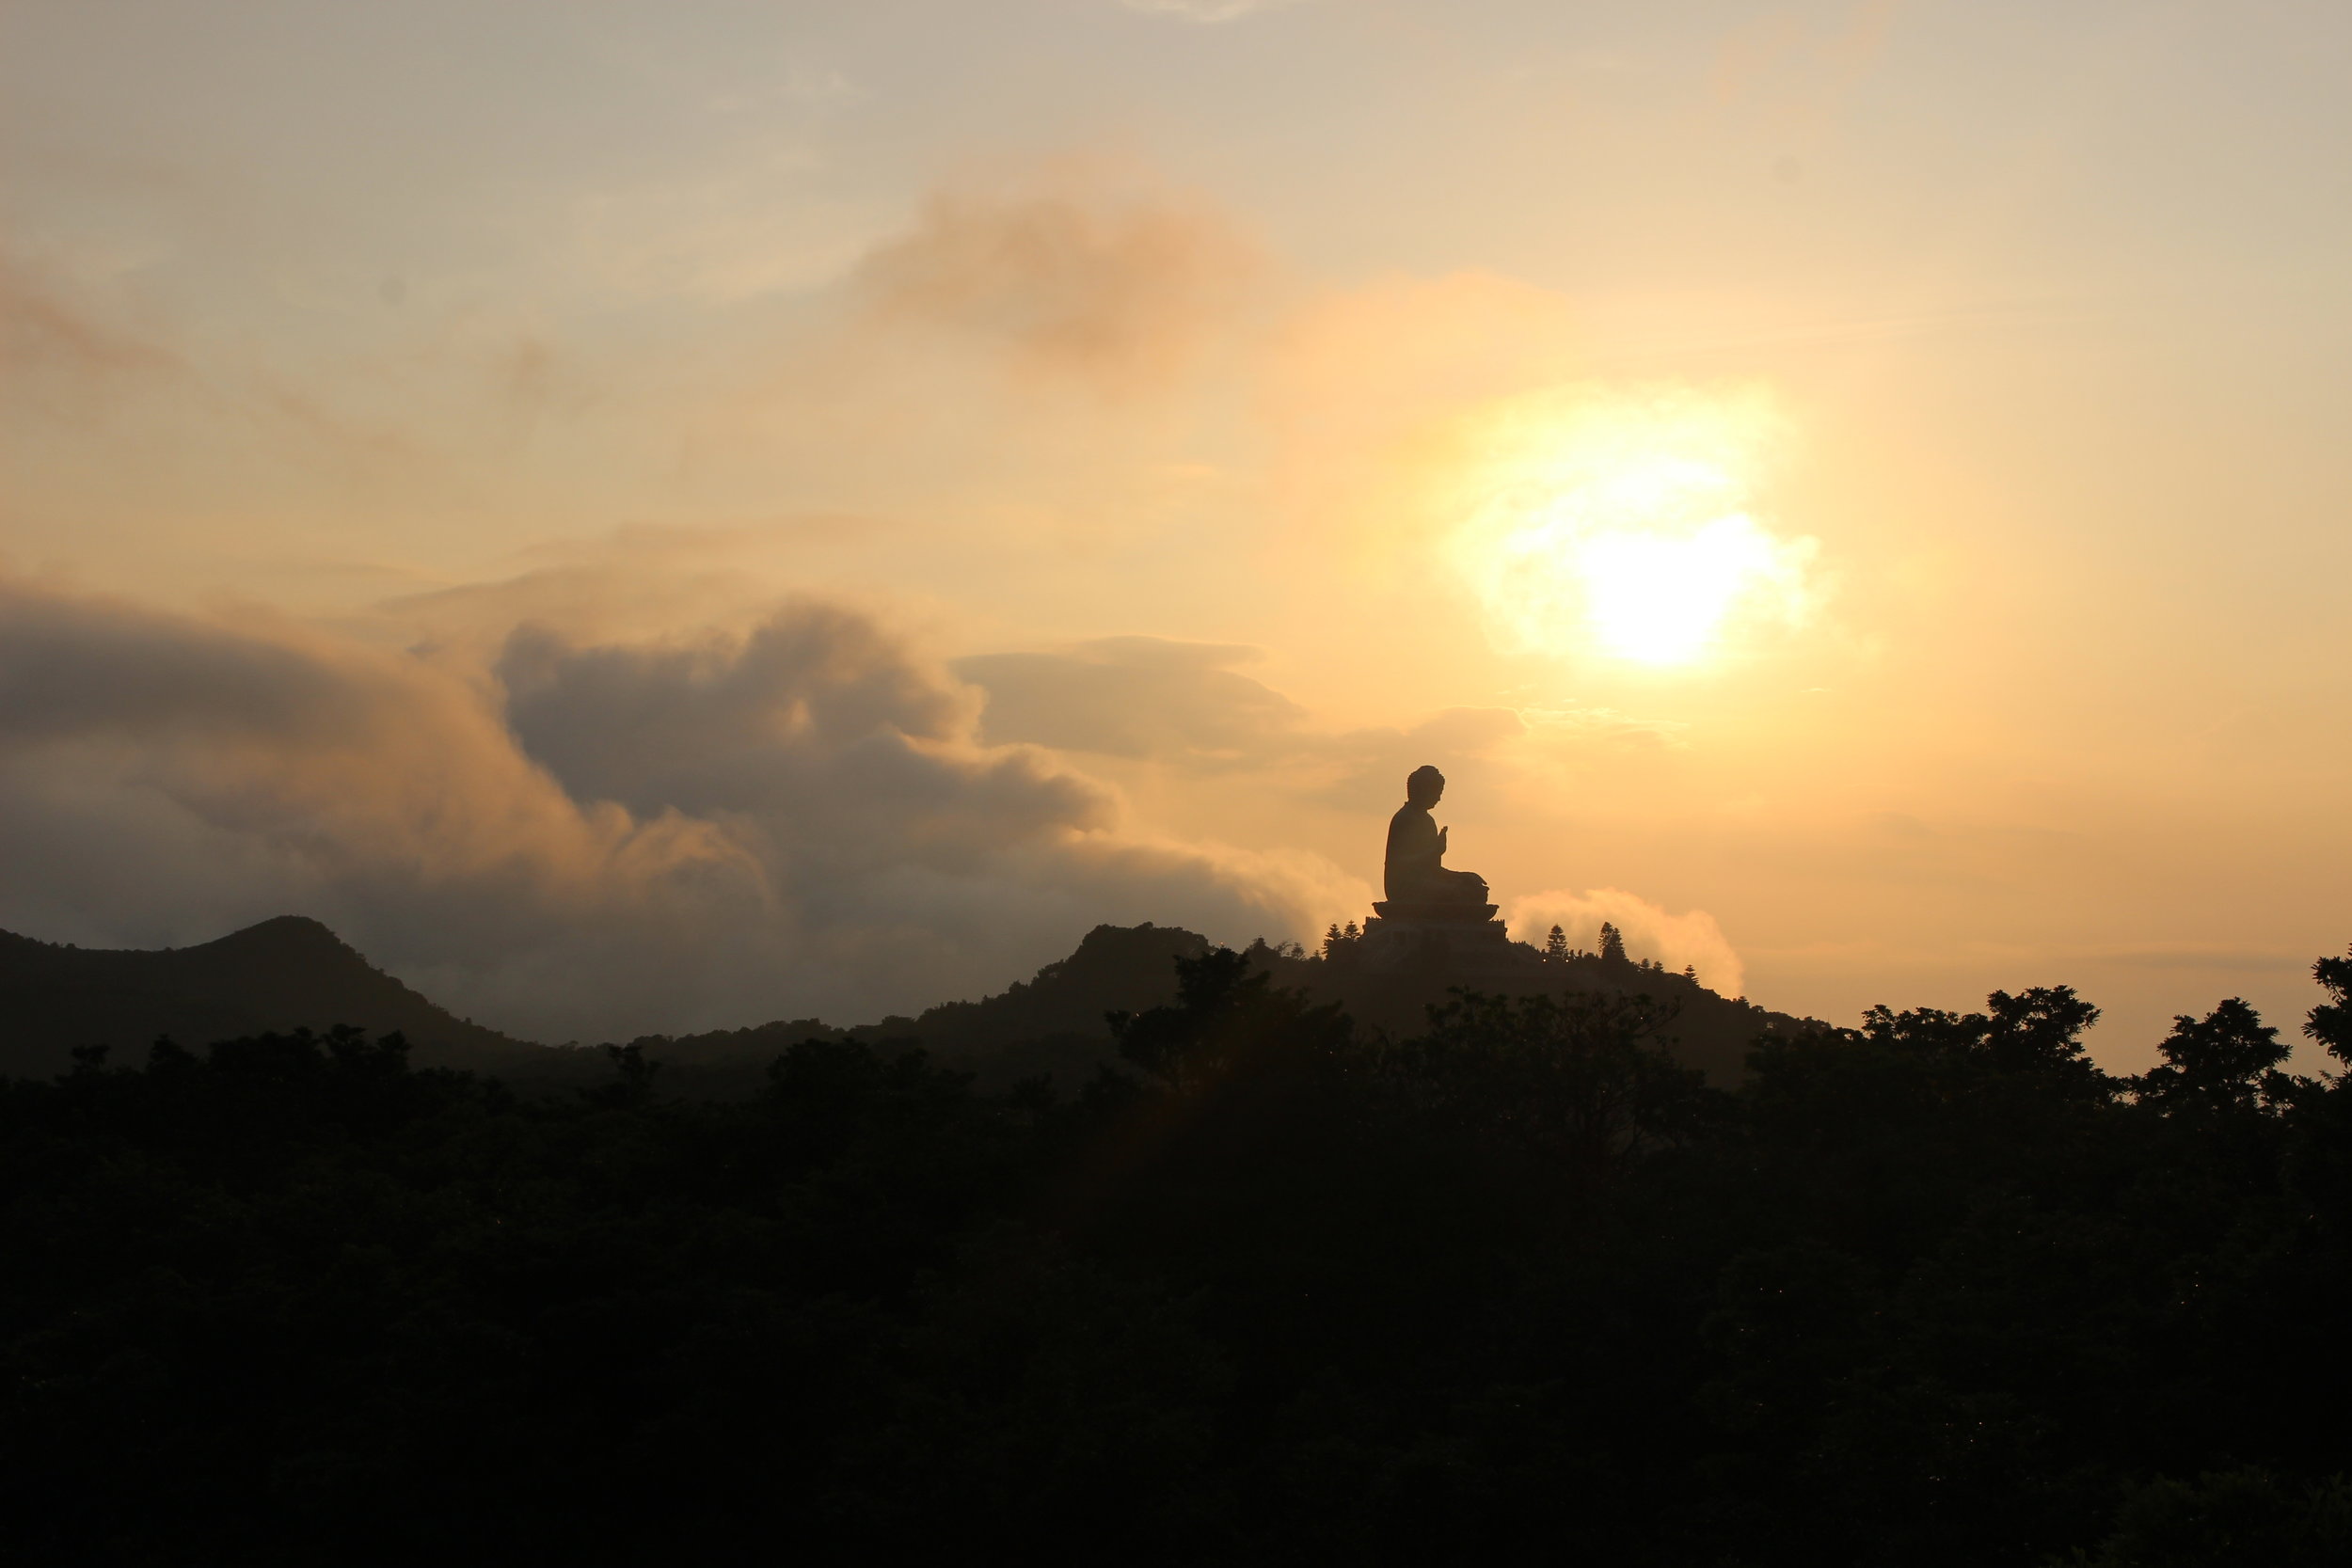  Buddha statue at sunset 